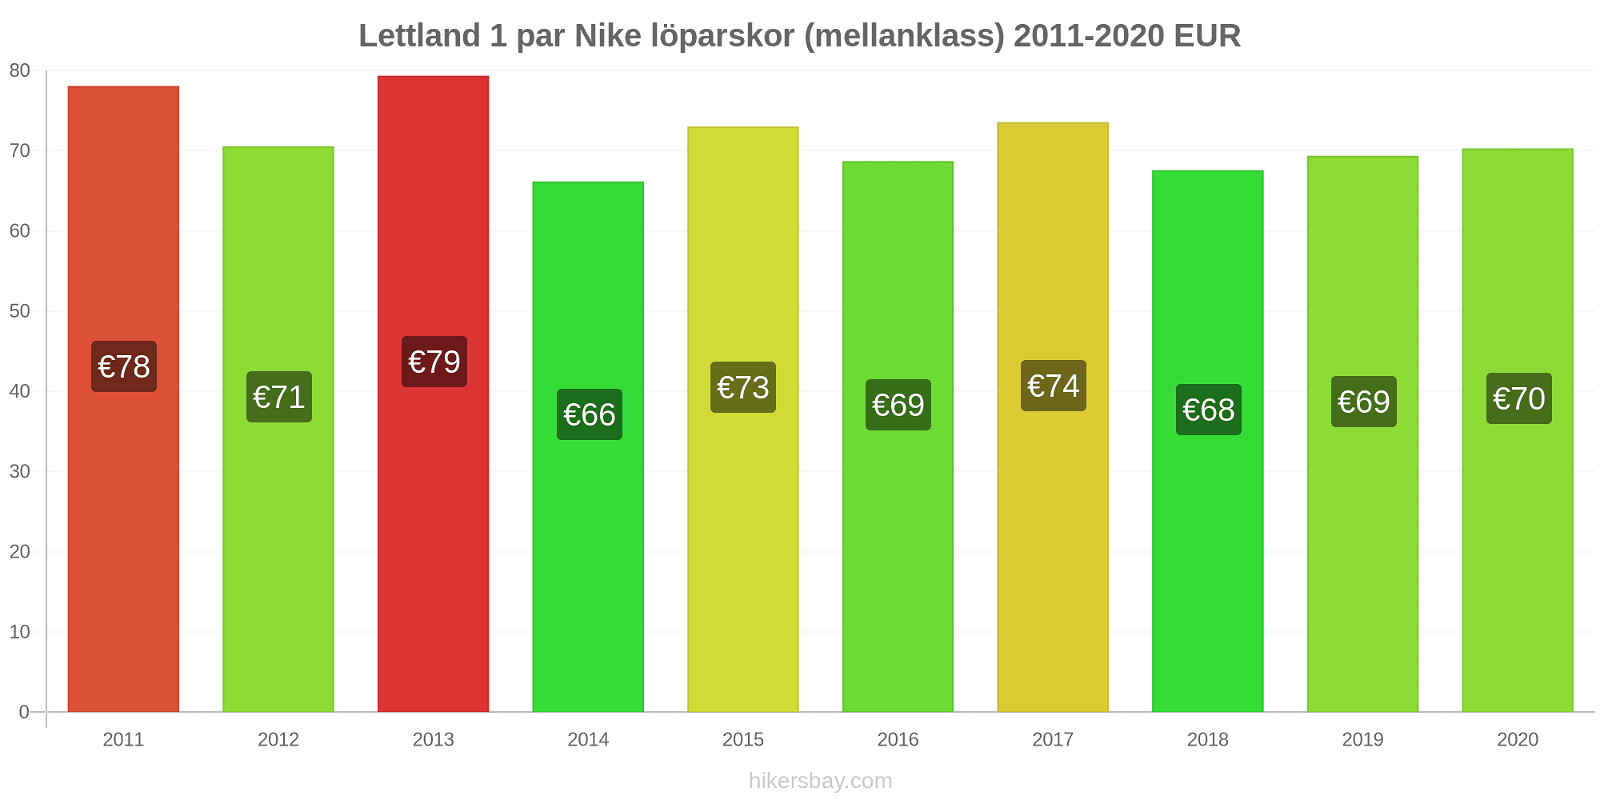 Lettland prisförändringar 1 par Nike löparskor (mellanklass) hikersbay.com